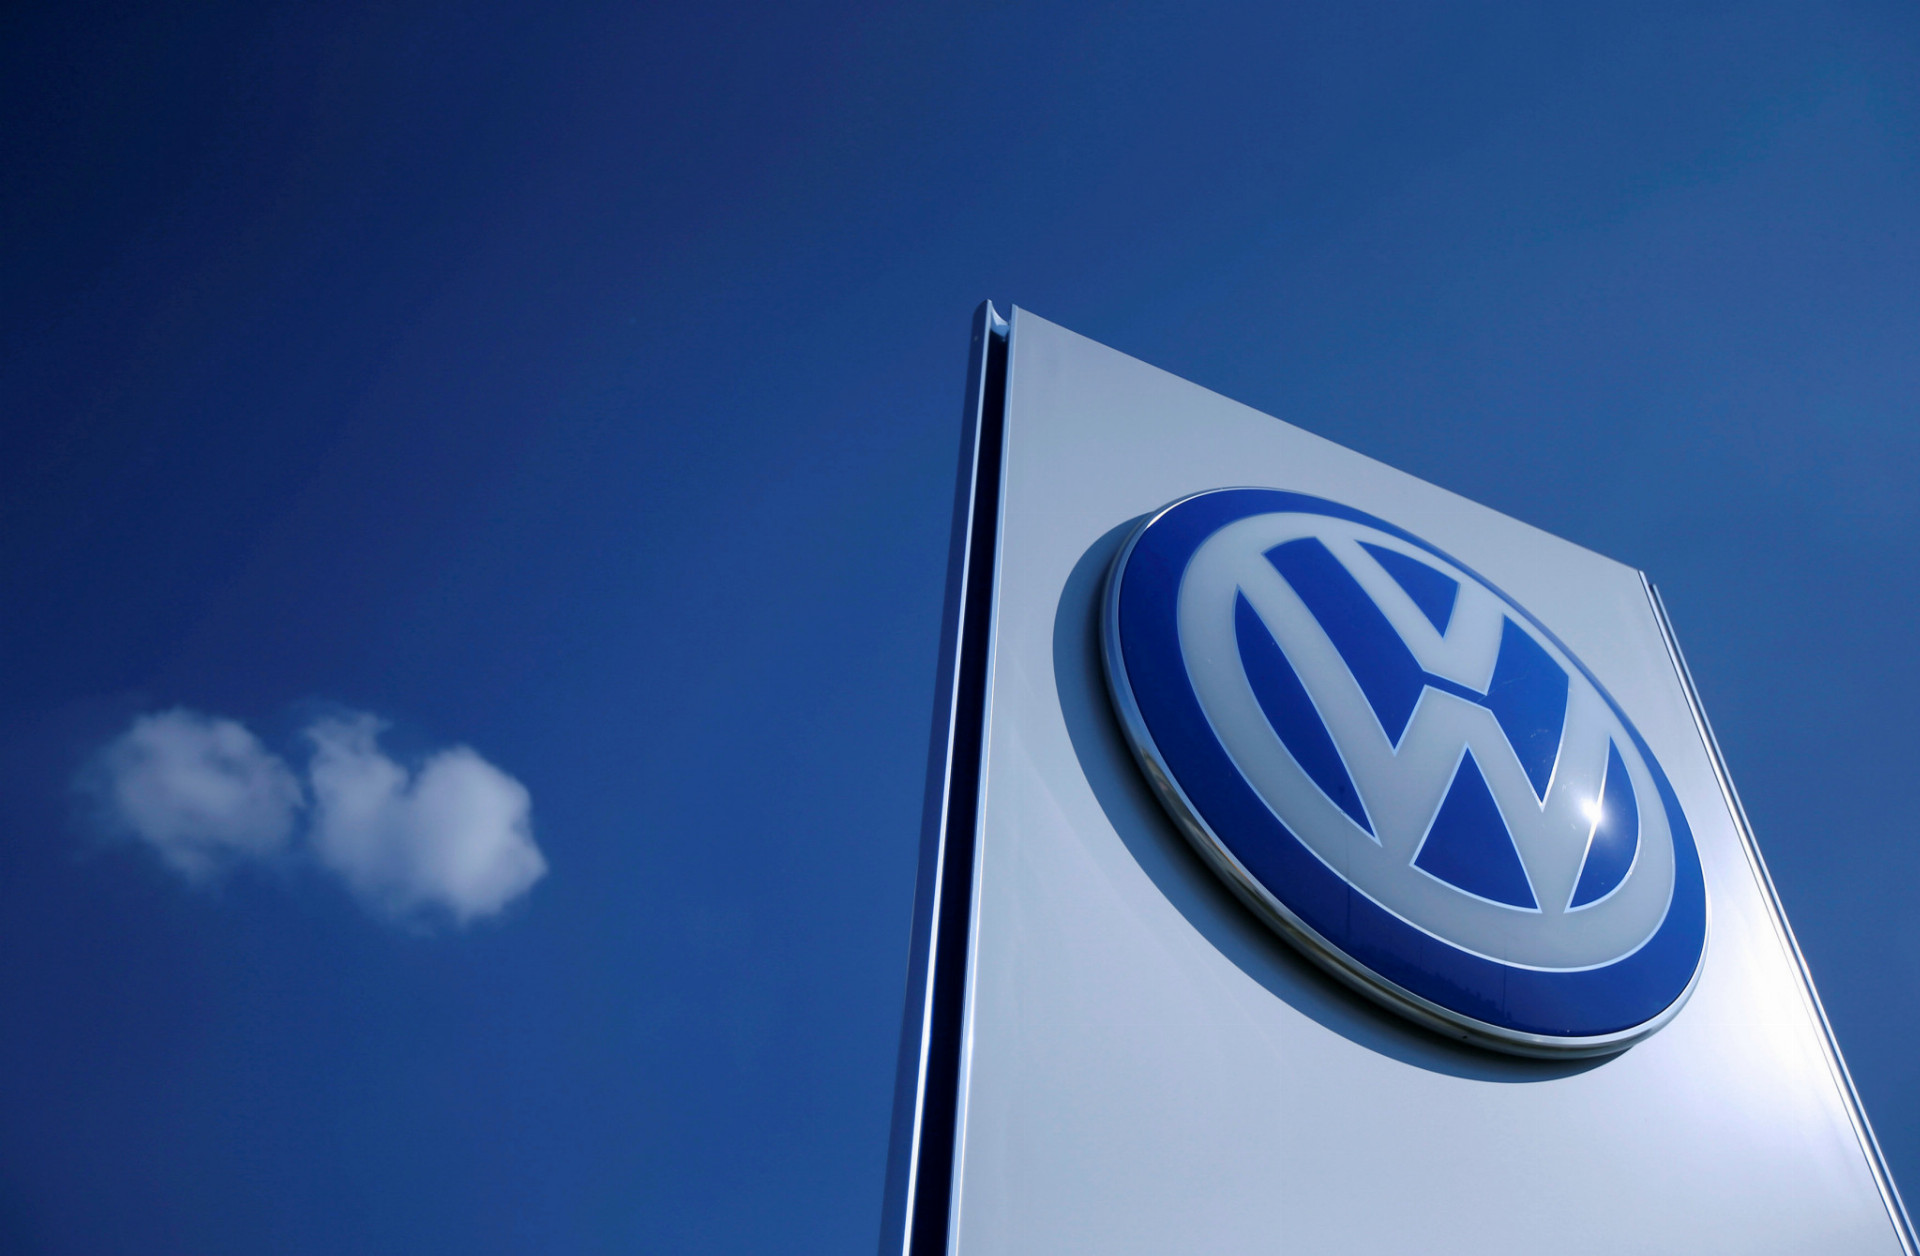 Najstaršia automobilka na Slovensku začala svoju históriu písať pod názvom Bratislavské automobilové závody, ktoré boli založené ešte v roku 1971. Prelom sa začal v máji 1991, keď sa do štátneho podniku rozhodol vstúpiť nemecký automobilový gigant Volkswagen, ktorý s BAZ založil spoločný podnik. Volkswagen doň mohutne investoval a získal 80 percent jeho akcií. BAZ poskytli novému partnerovi výrobné priestory. V roku 1998 nemecký Volkswagen odkúpil aj zvyšných 20 percent, ktoré vlastnili bratislavské závody. Volkswagen Slovakia dnes zamestnáva viac ako 10-tisíc zamestnancov.